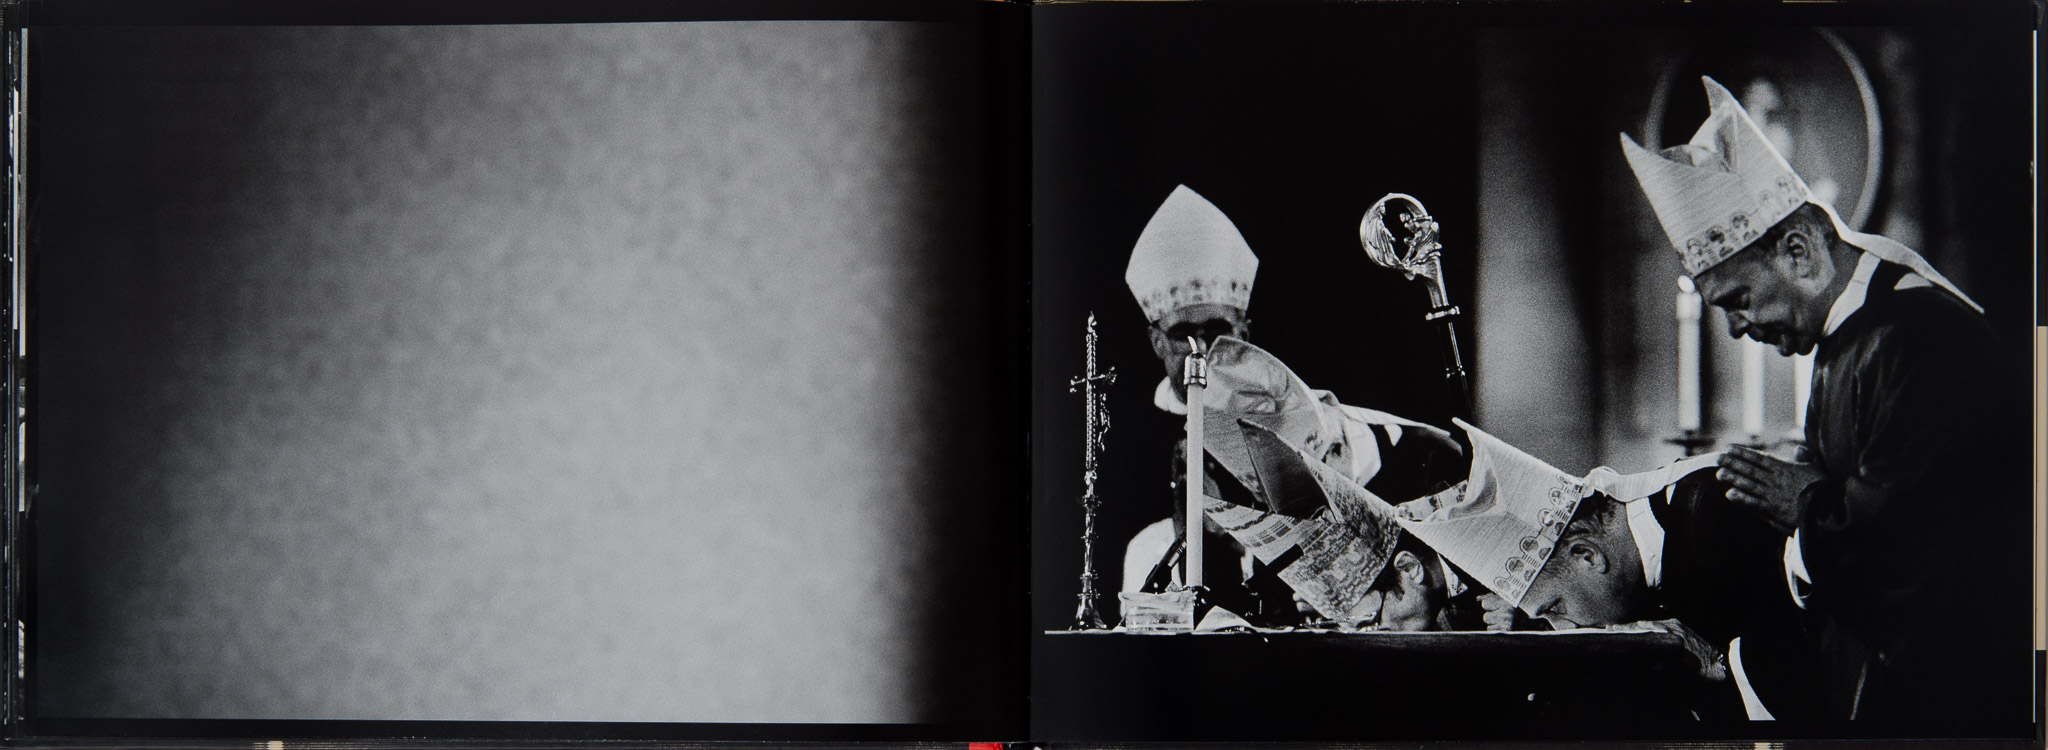 Der Altarkuss – Fotobuch über die katholischen Rituale im Erzbistum Köln